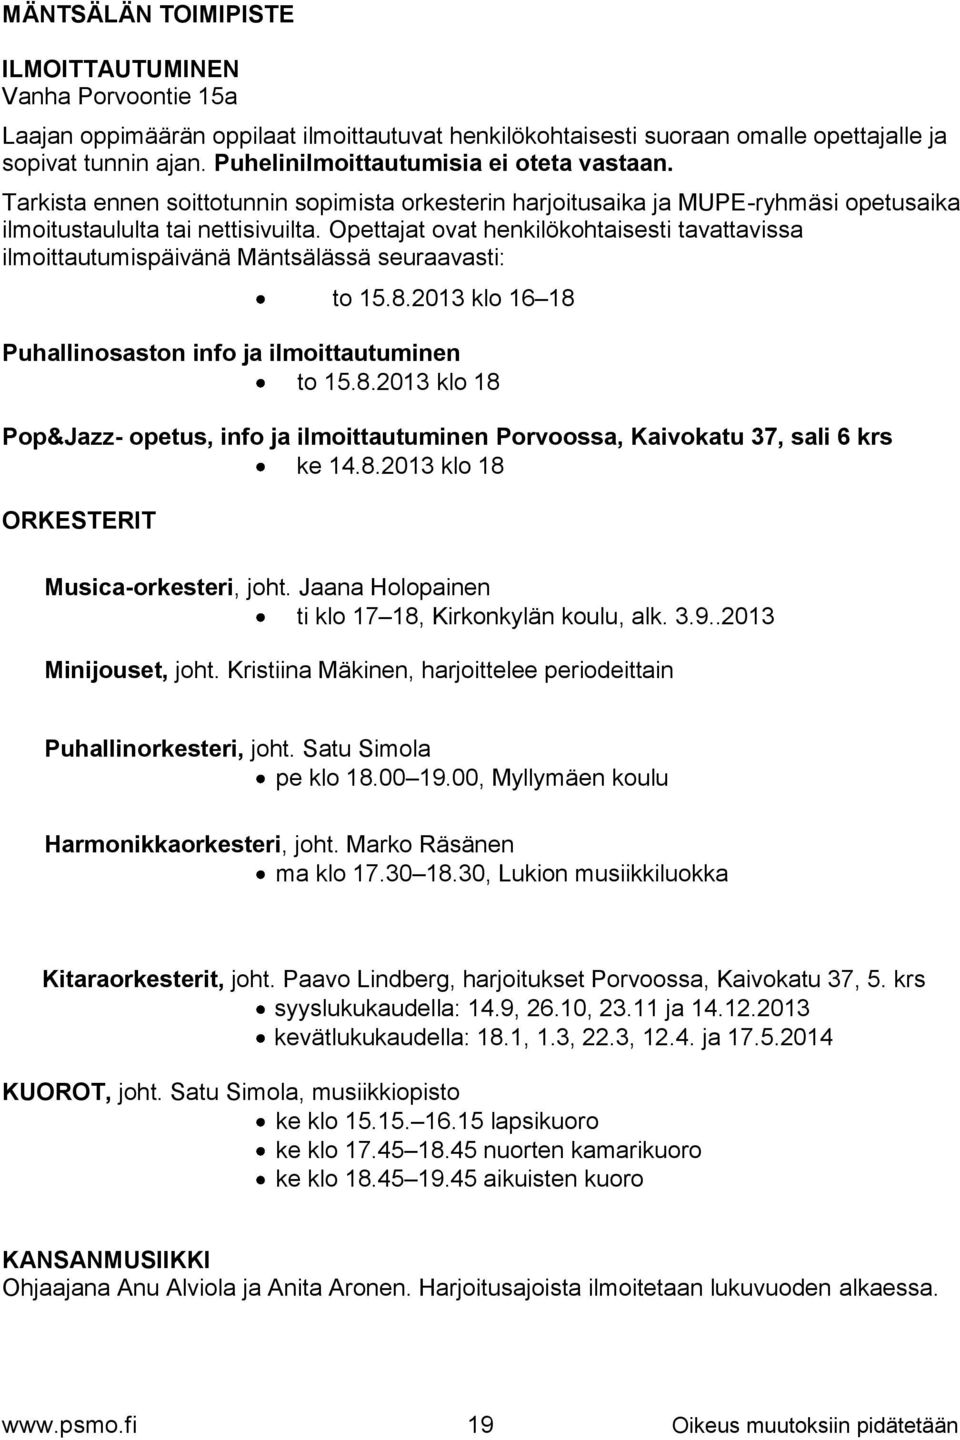 Opettajat ovat henkilökohtaisesti tavattavissa ilmoittautumispäivänä Mäntsälässä seuraavasti: to 15.8.2013 klo 16 18 Puhallinosaston info ja ilmoittautuminen to 15.8.2013 klo 18 Pop&Jazz- opetus, info ja ilmoittautuminen Porvoossa, Kaivokatu 37, sali 6 krs ke 14.